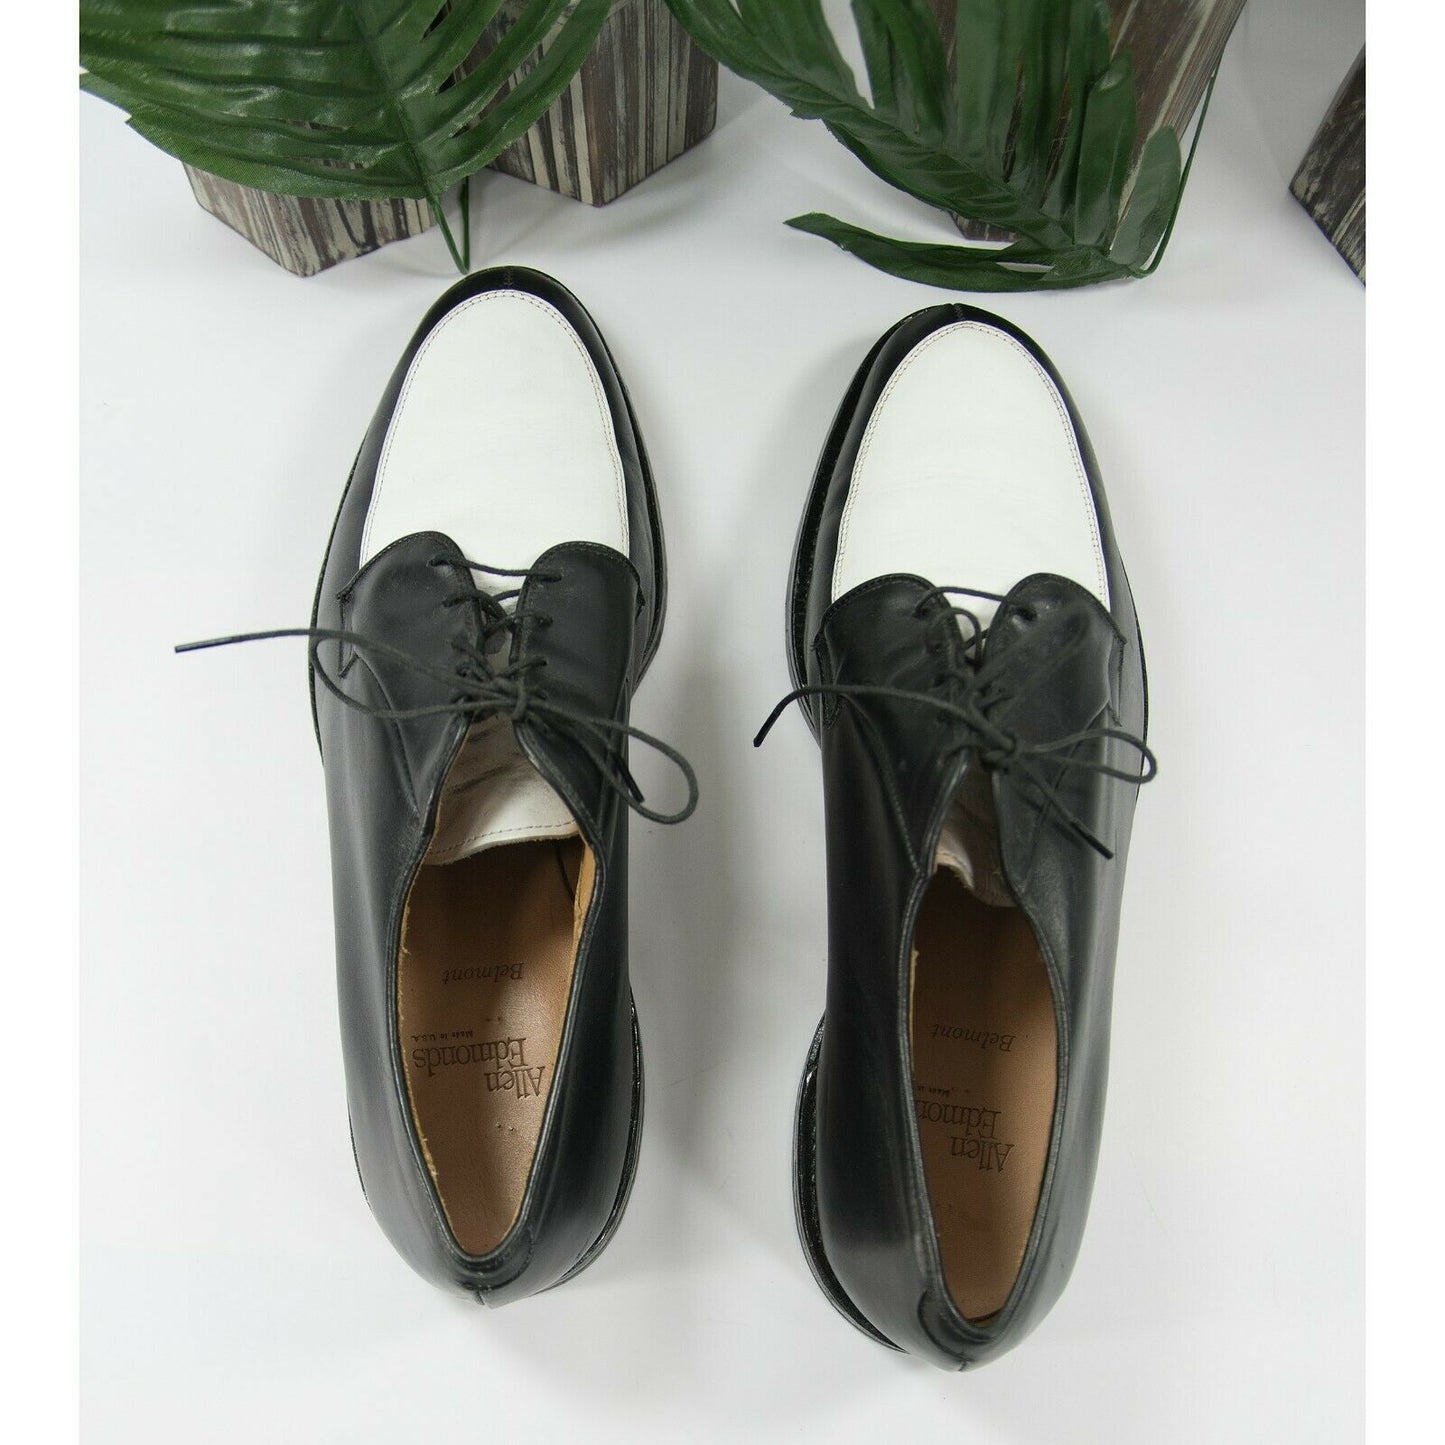 Allen Edmonds Black White Colorblock Lace Up Oxford Dress Shoes Size 13